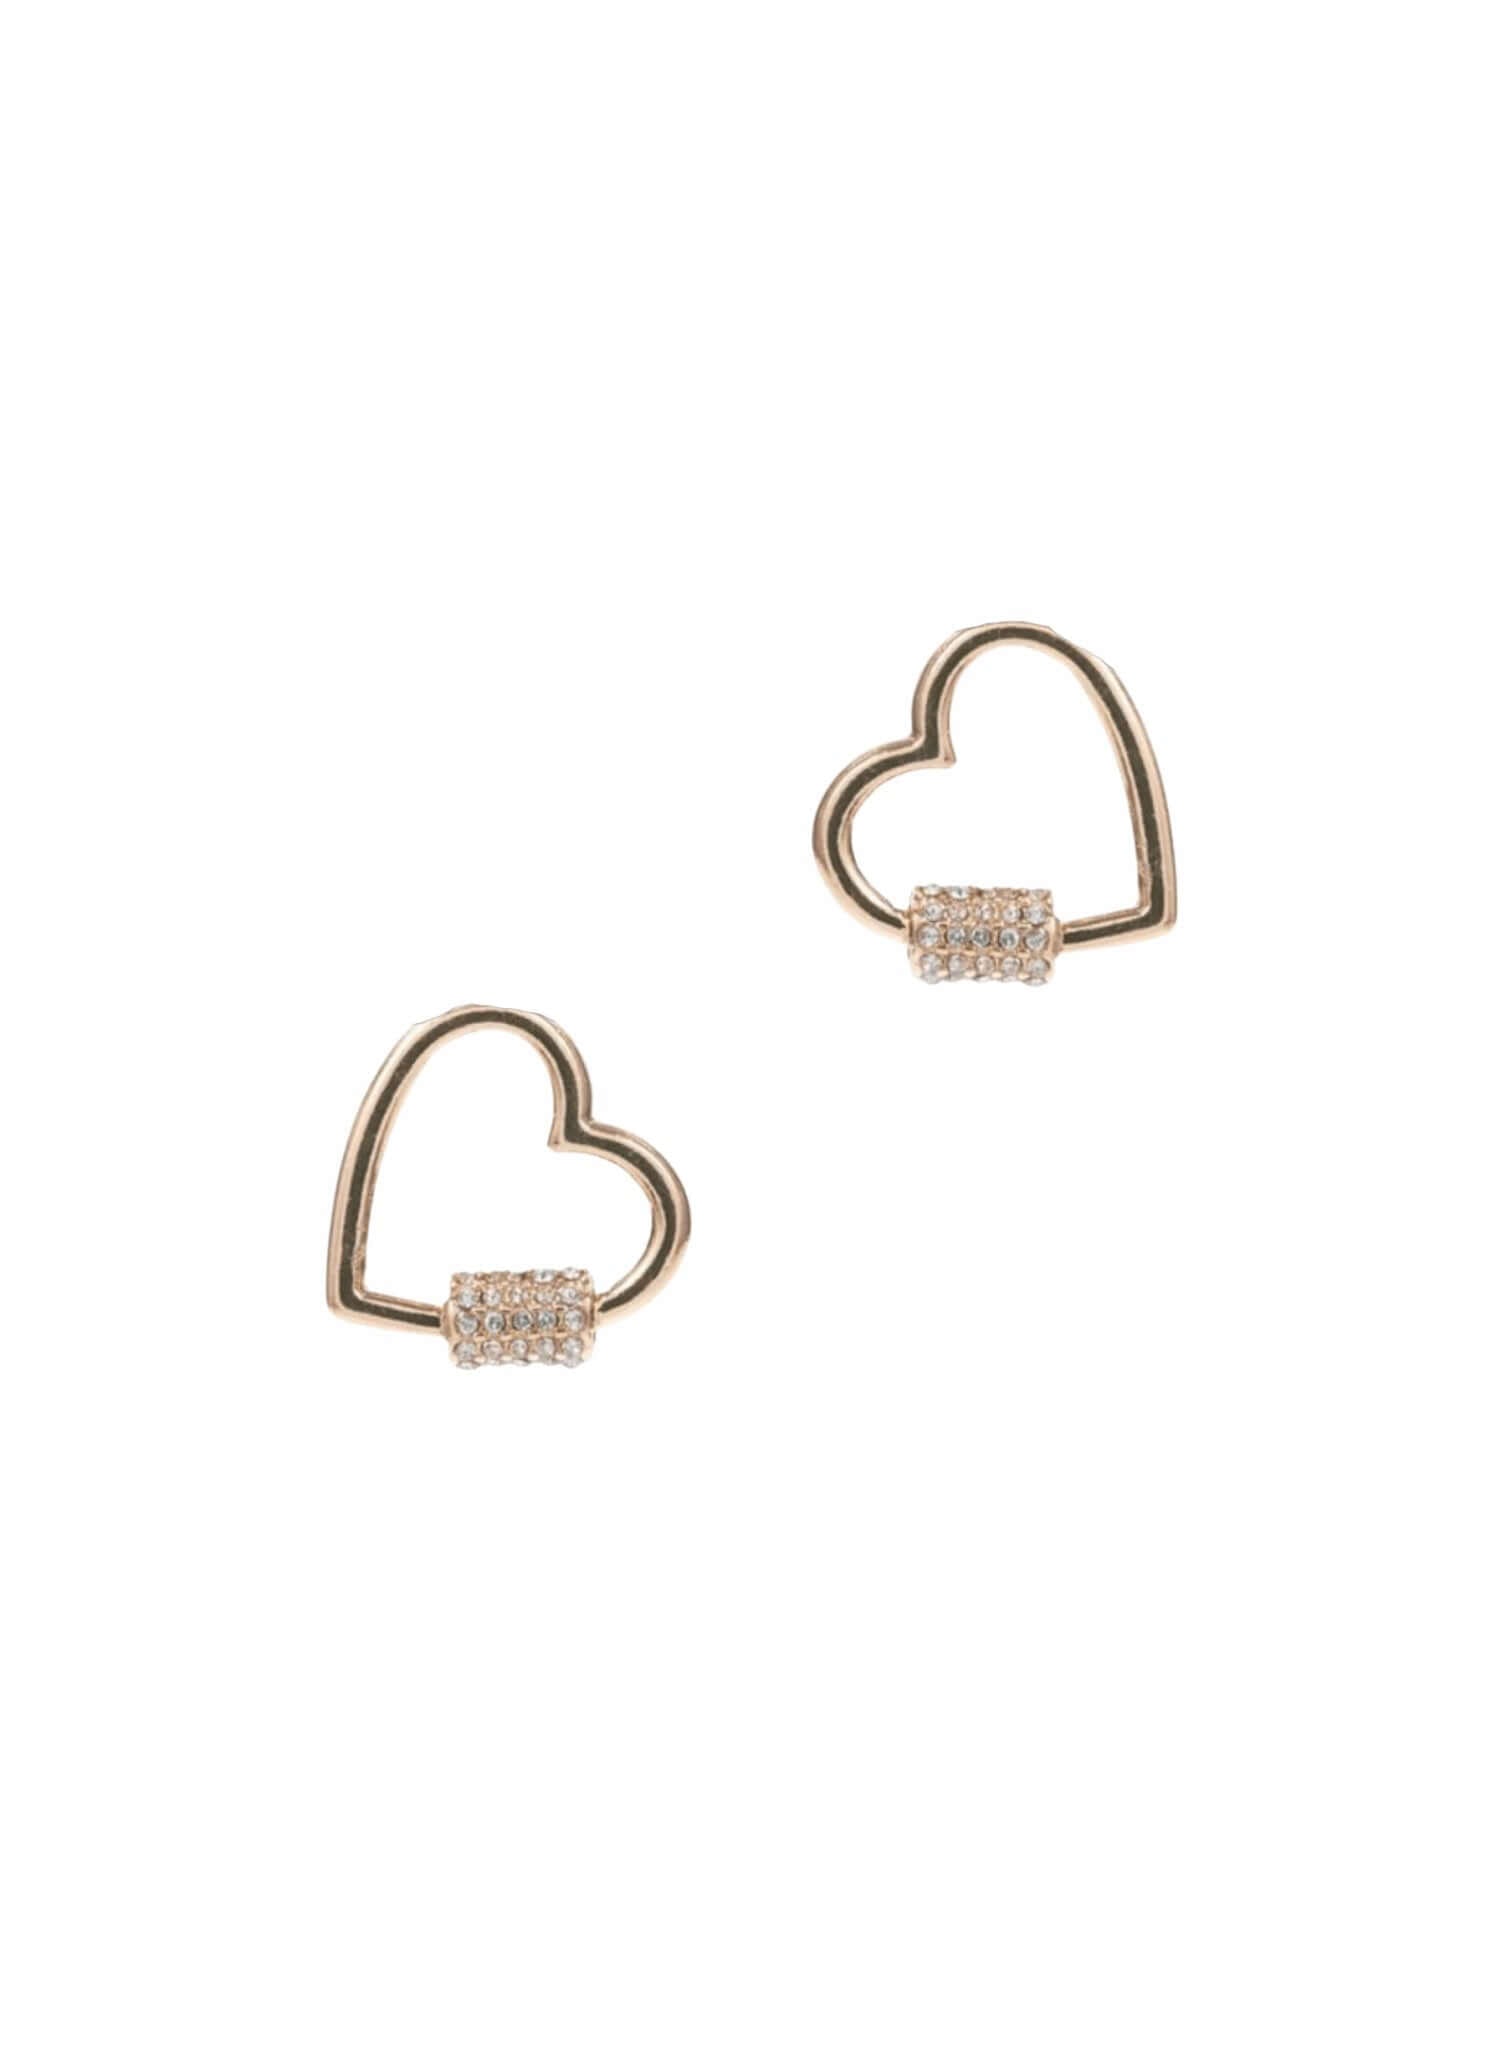 Gold Heart Shape Earrings - Rocca & Co